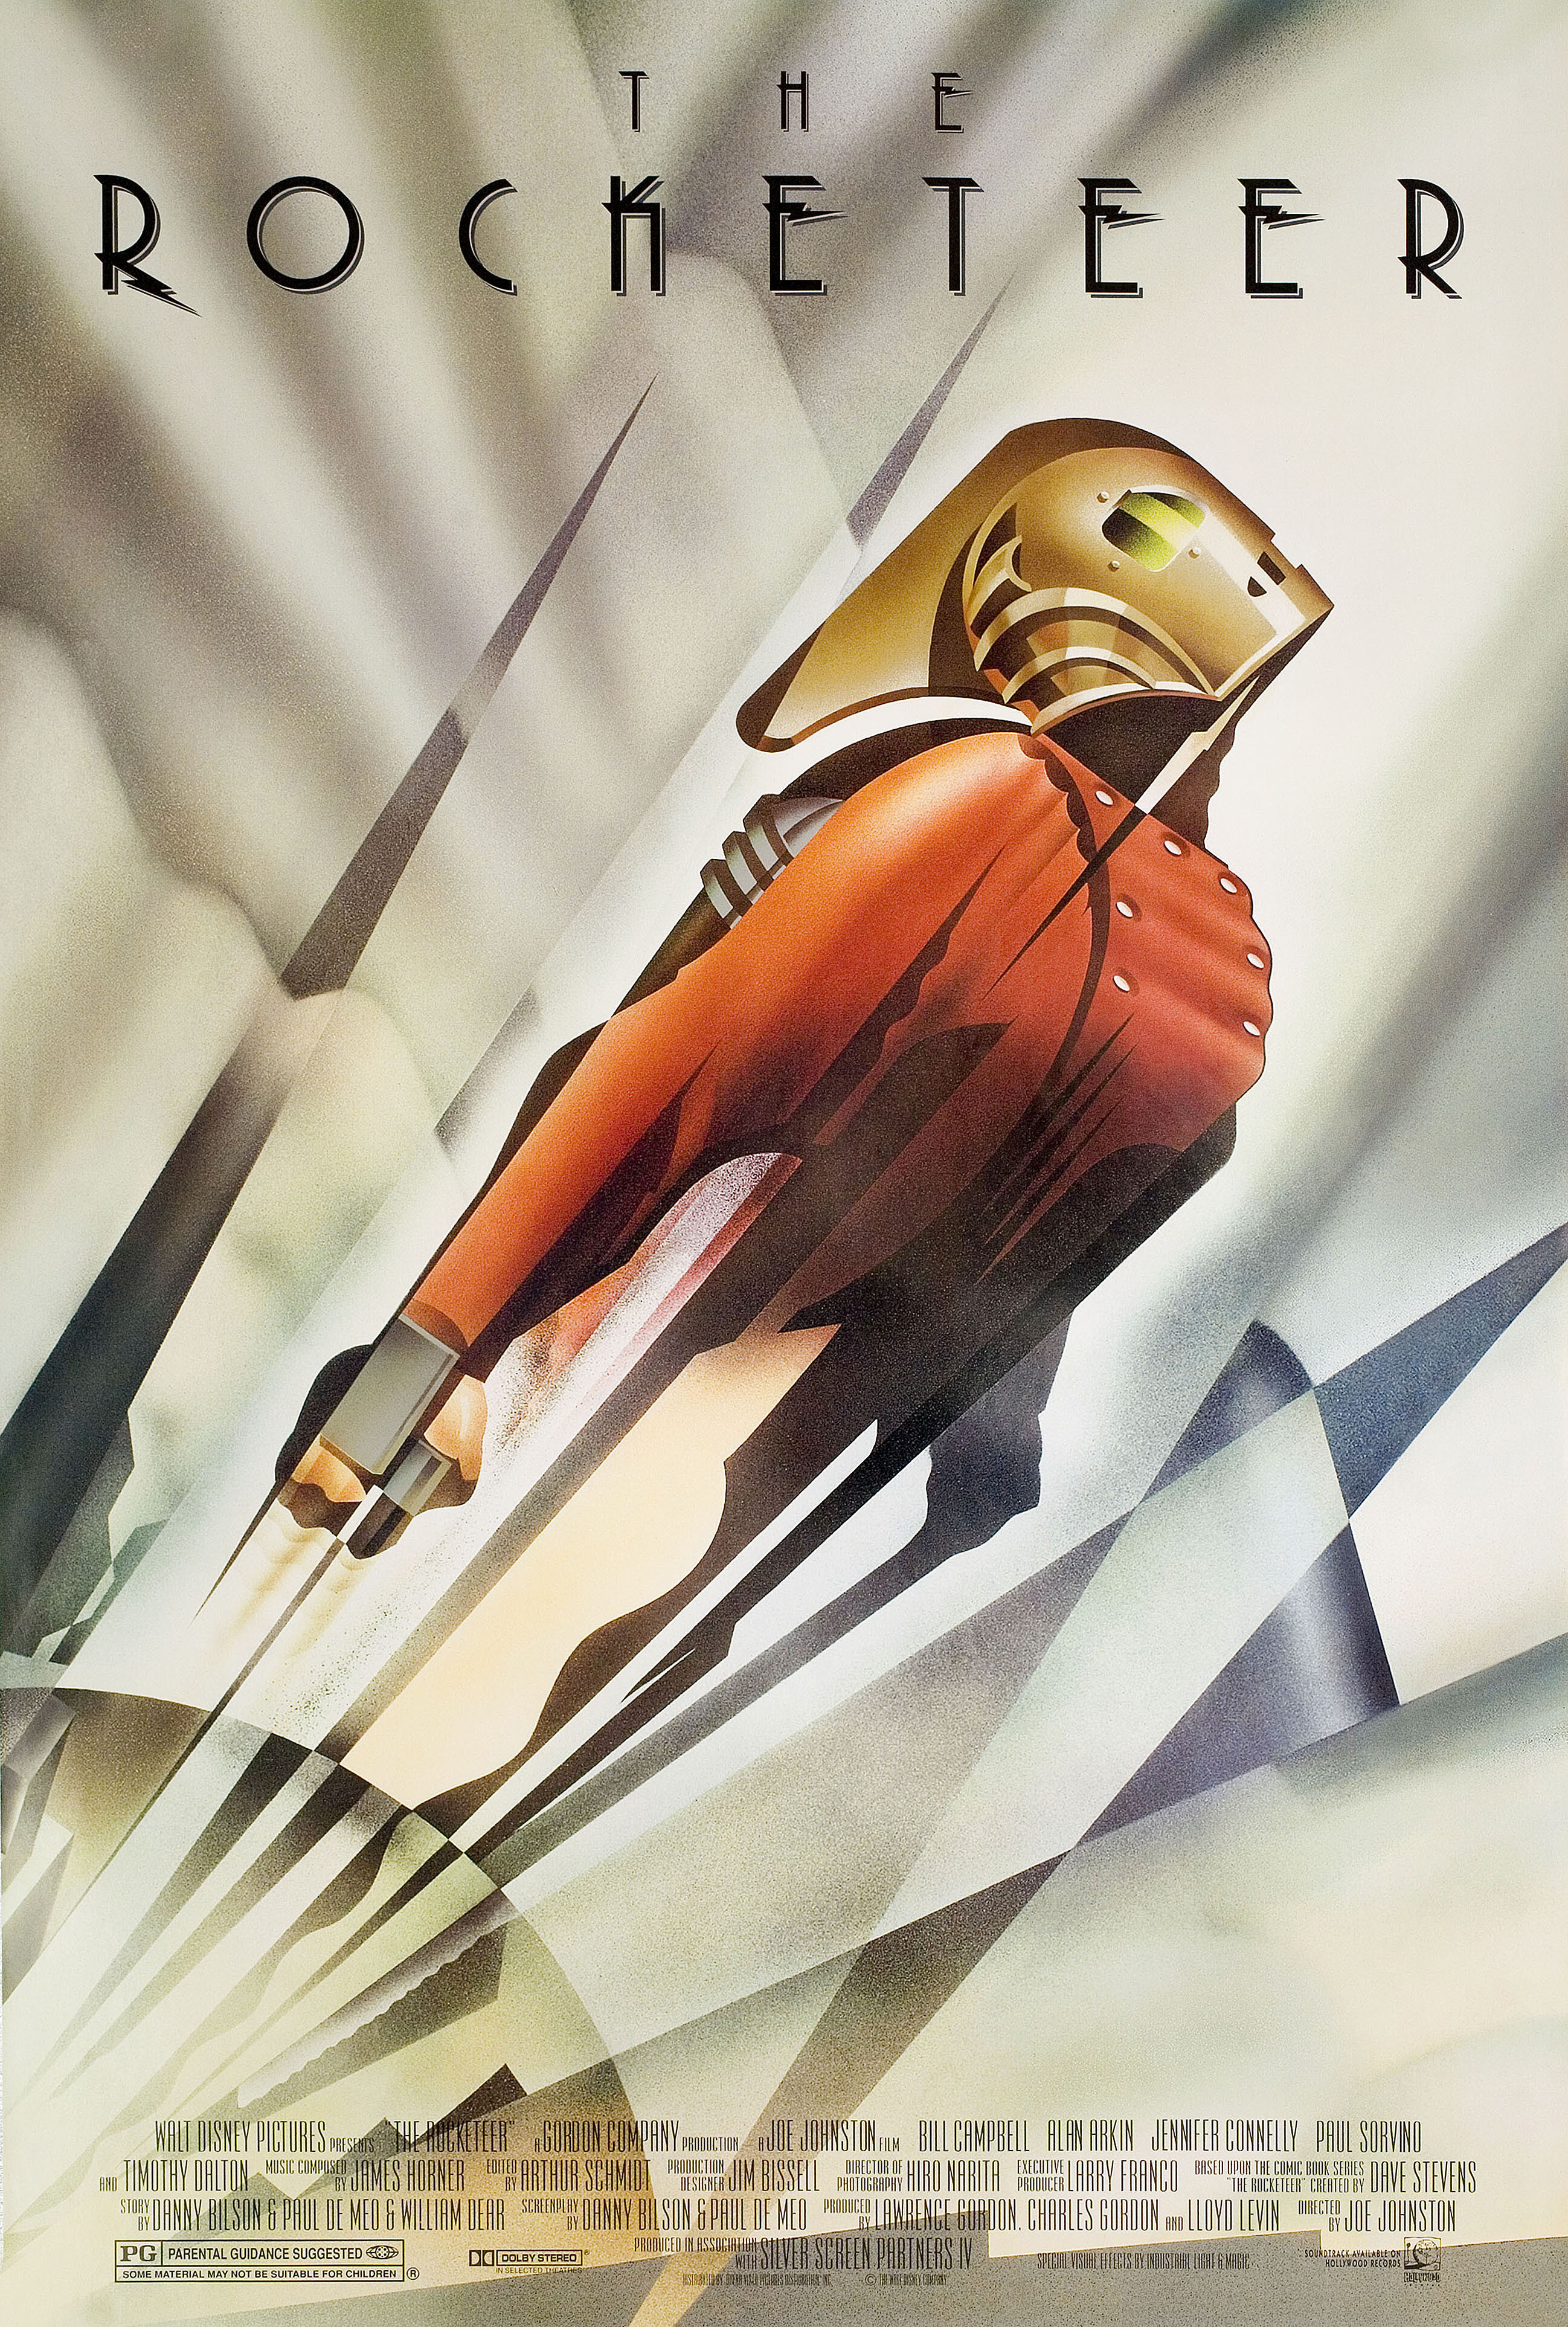 Ракетчик (The Rocketeer, 1991), режиссёр Джо Джонстон, постер к фильму в стиле ар-деко (США, 1991 год), автор Джон Мэттос